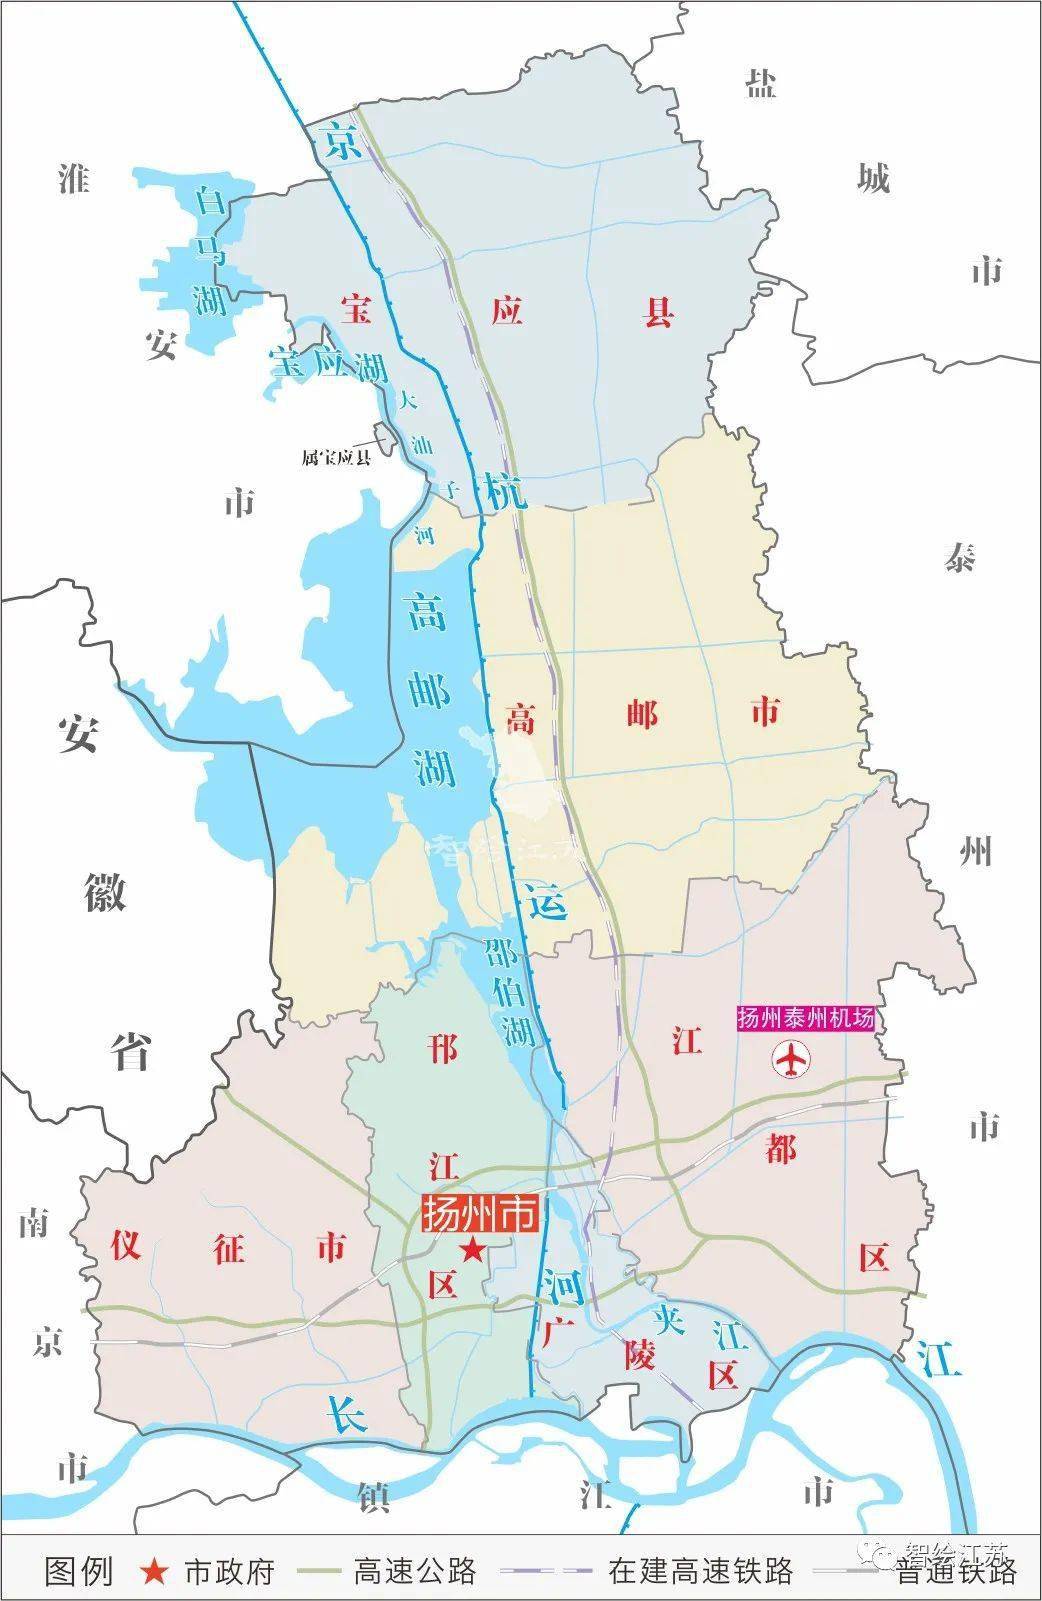 扬州现辖3个区(邗江,广陵,江都), 2个县级市(高邮,仪征), 一个县